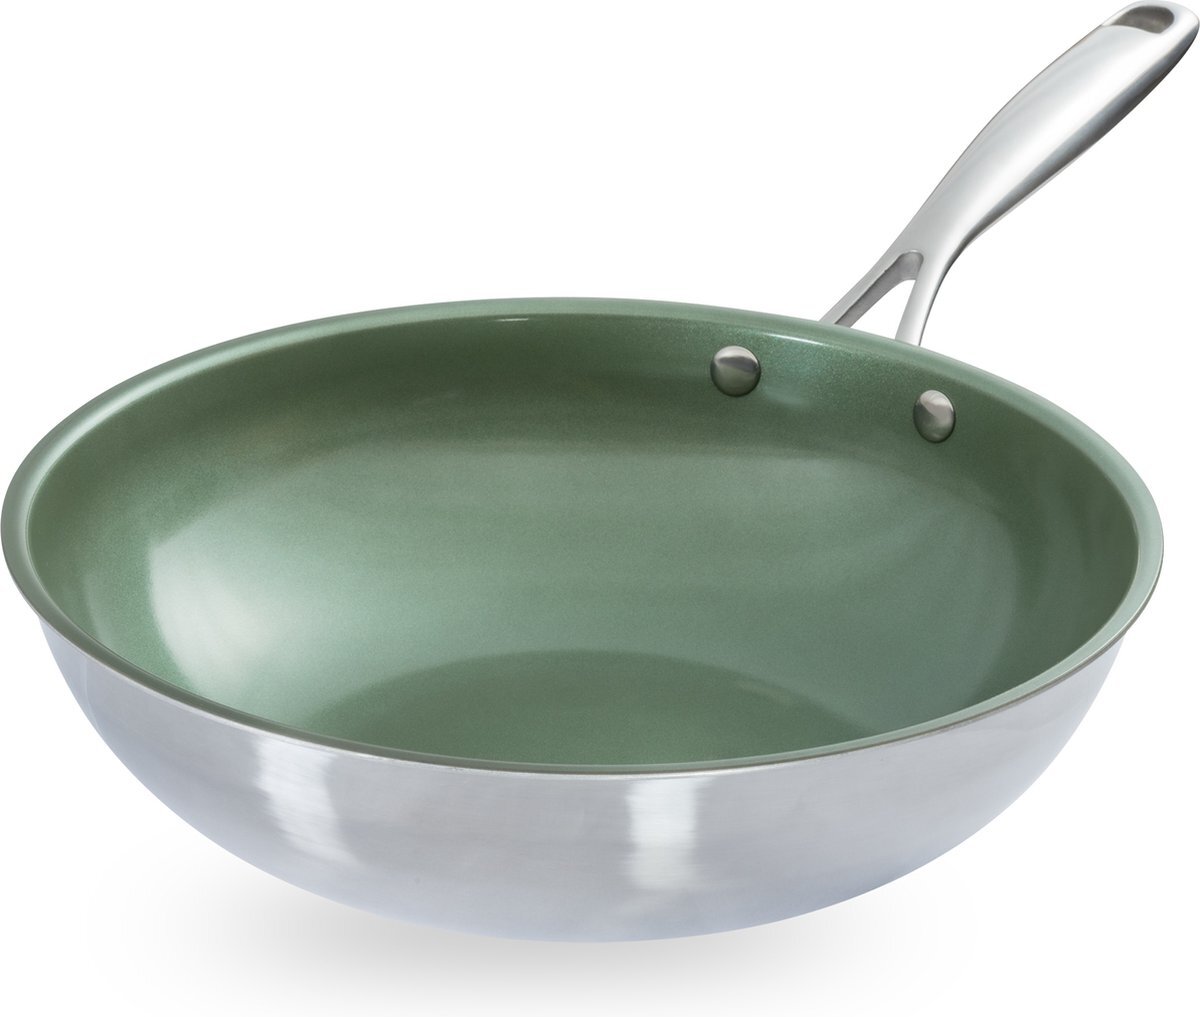 Just Vegan Ceravegan RVS ECO wokpan – 28cm, 100% vegan, plantaardige anti-aanbaklaag - avocado-olie – duurzame wok